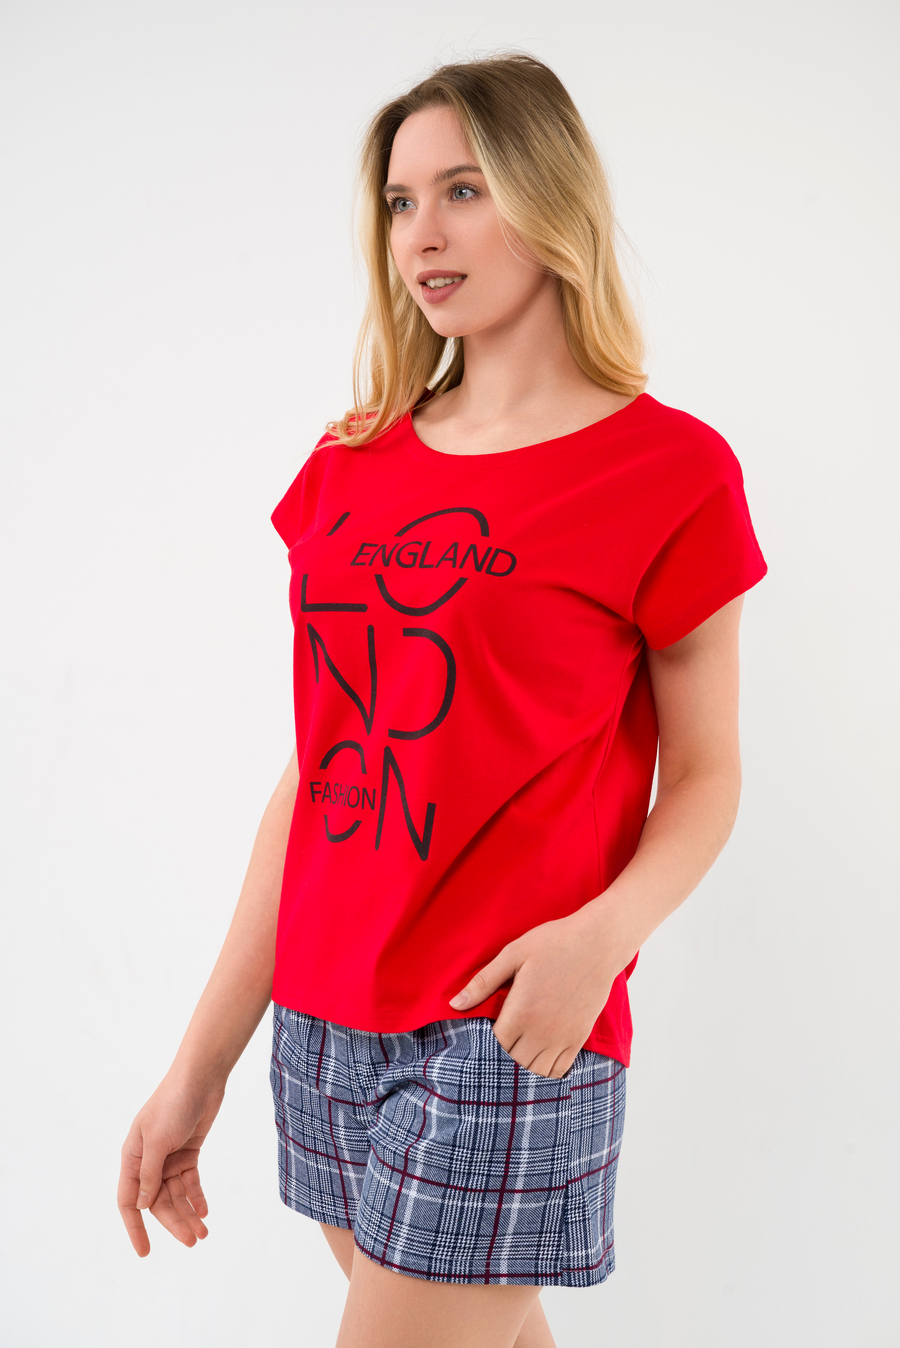 Костюм из футболки и шорт из кулирки Алиса красный